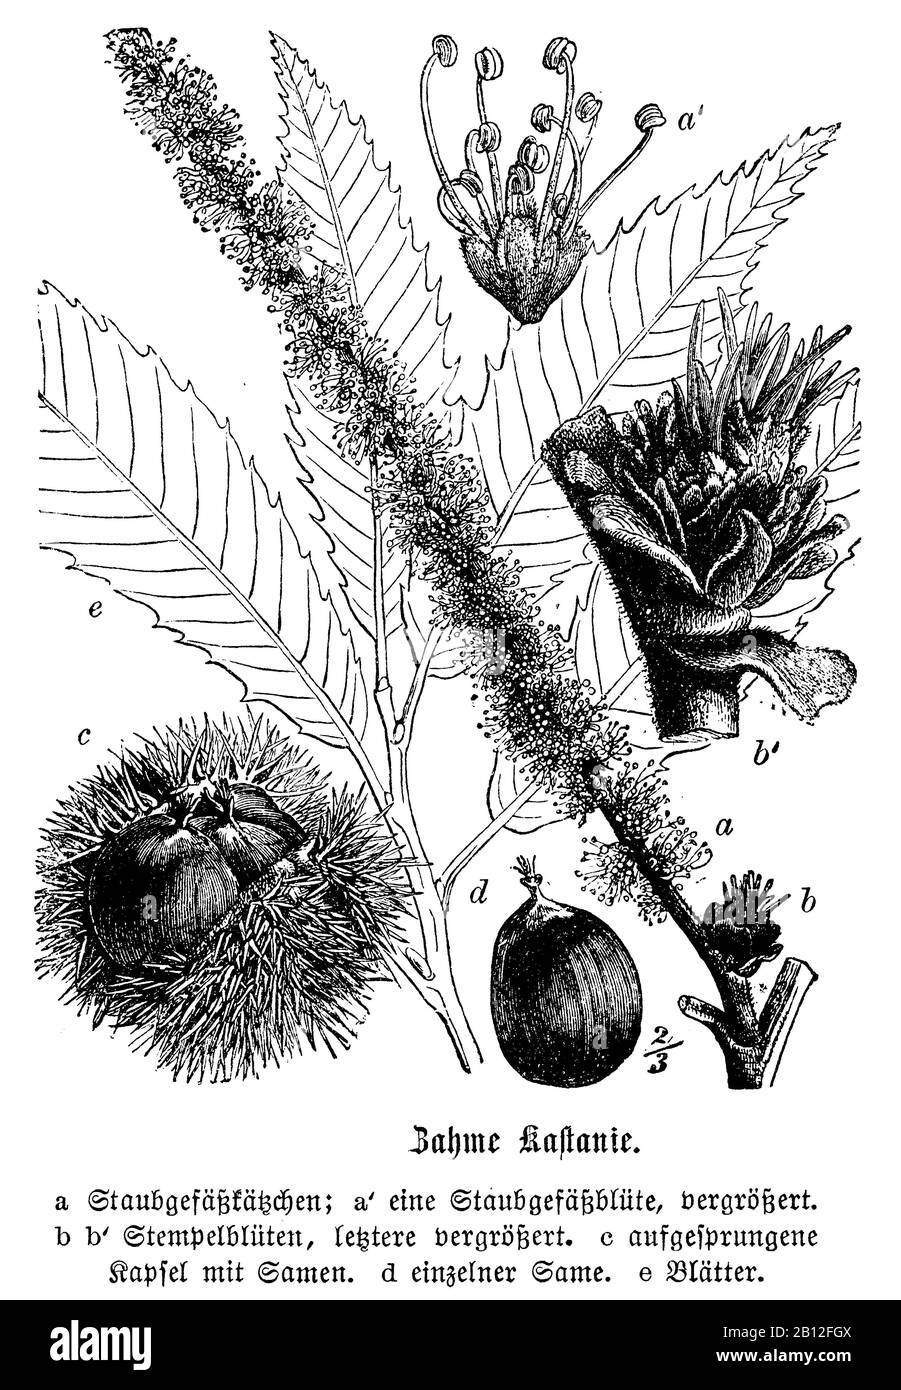 Süßkastanie, Castanea sativa, Esskastanie, châtaignier ou châtaignier commun, anonym (Botanik-Buch, 1880) Stockfoto